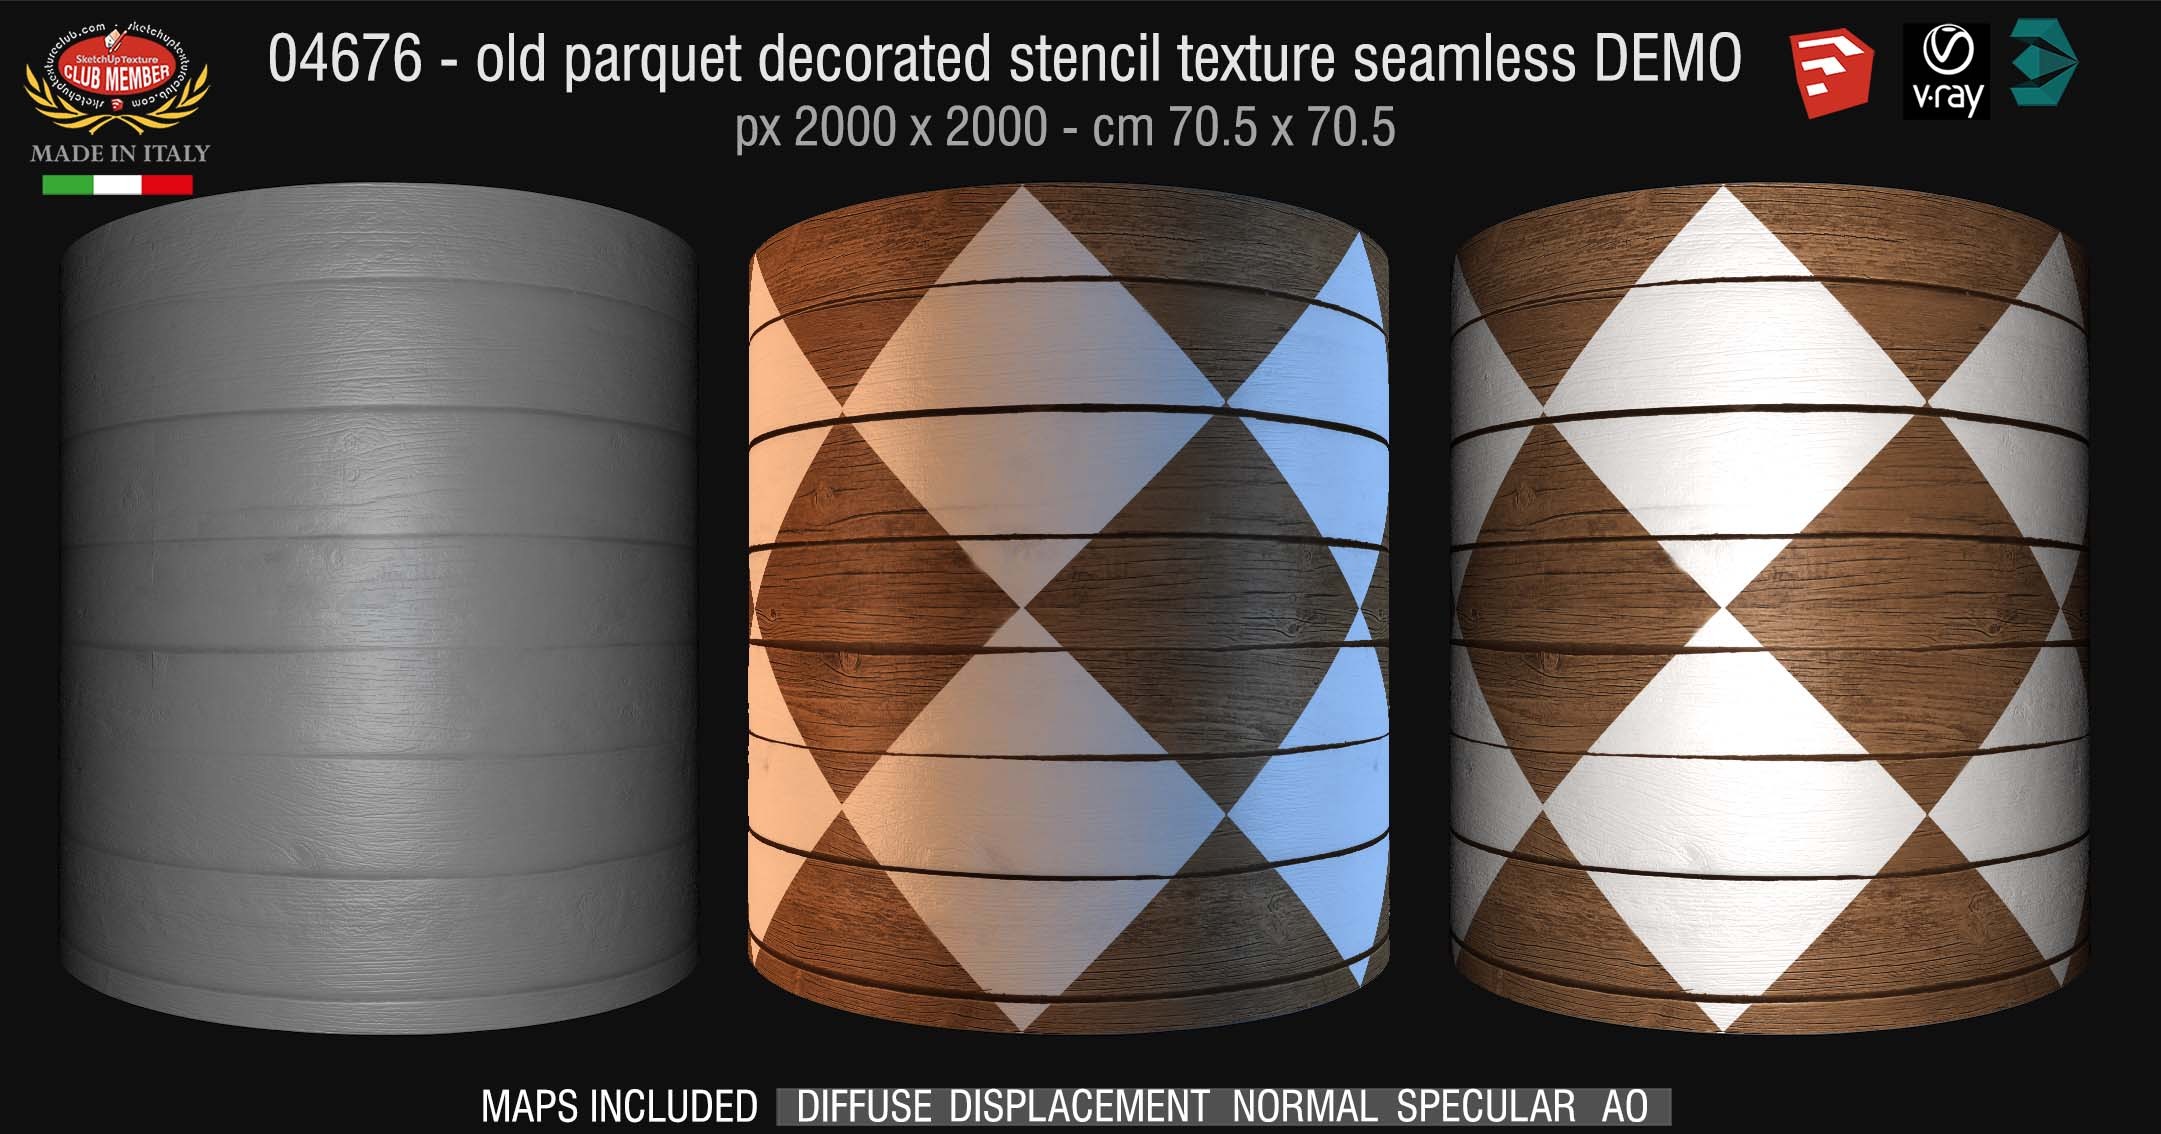 04676 HR Parquet decorated stencil texture seamless + maps DEMO